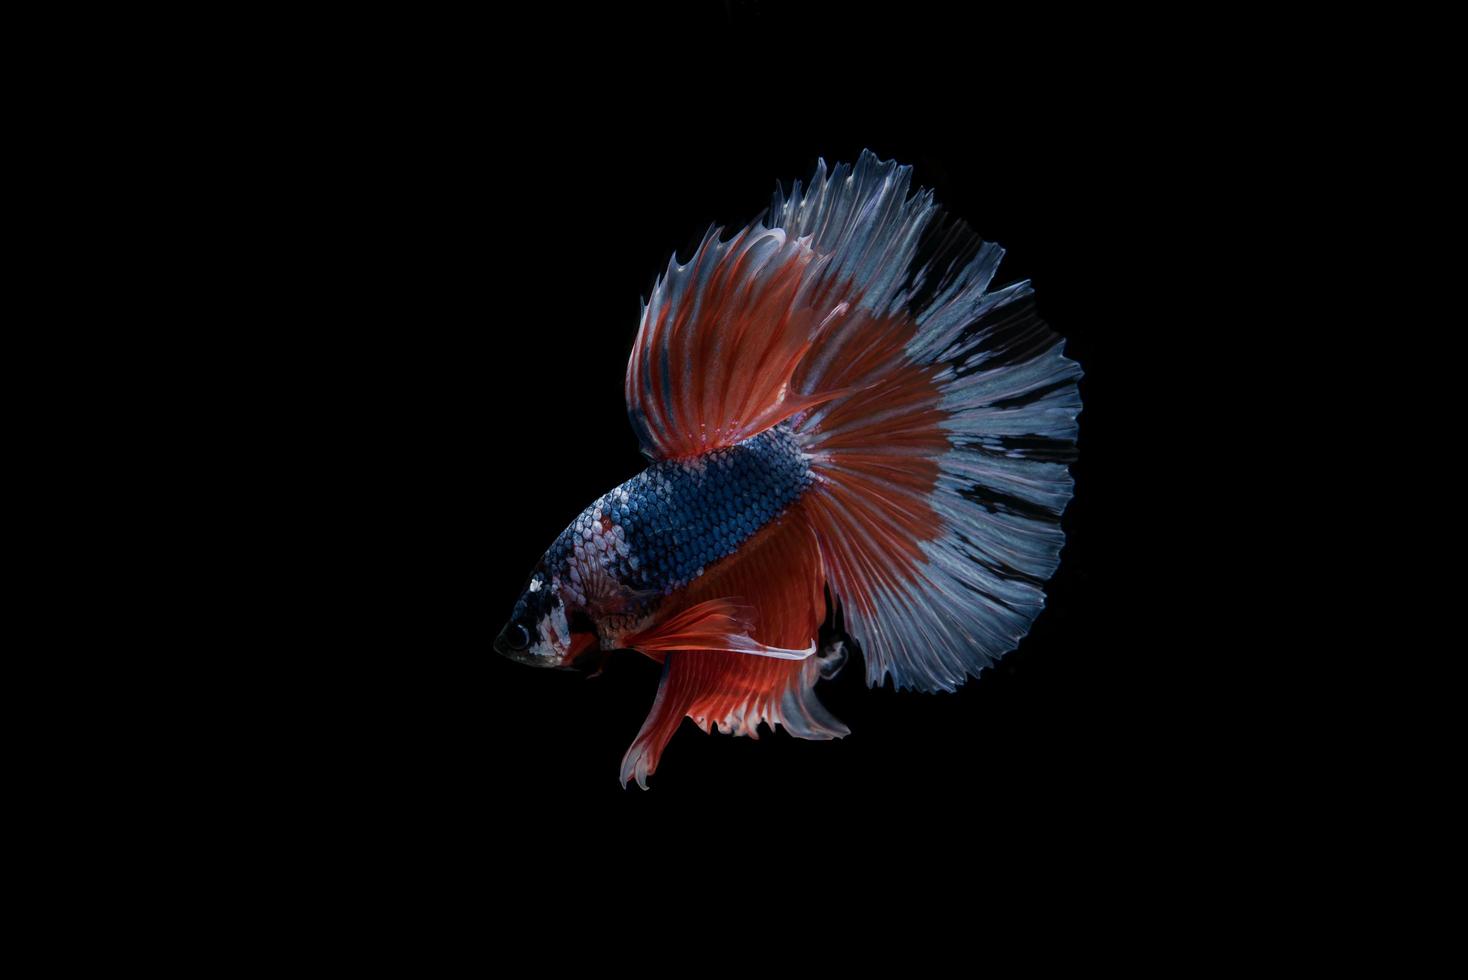 vacker färgglad siamesisk bettafisk foto